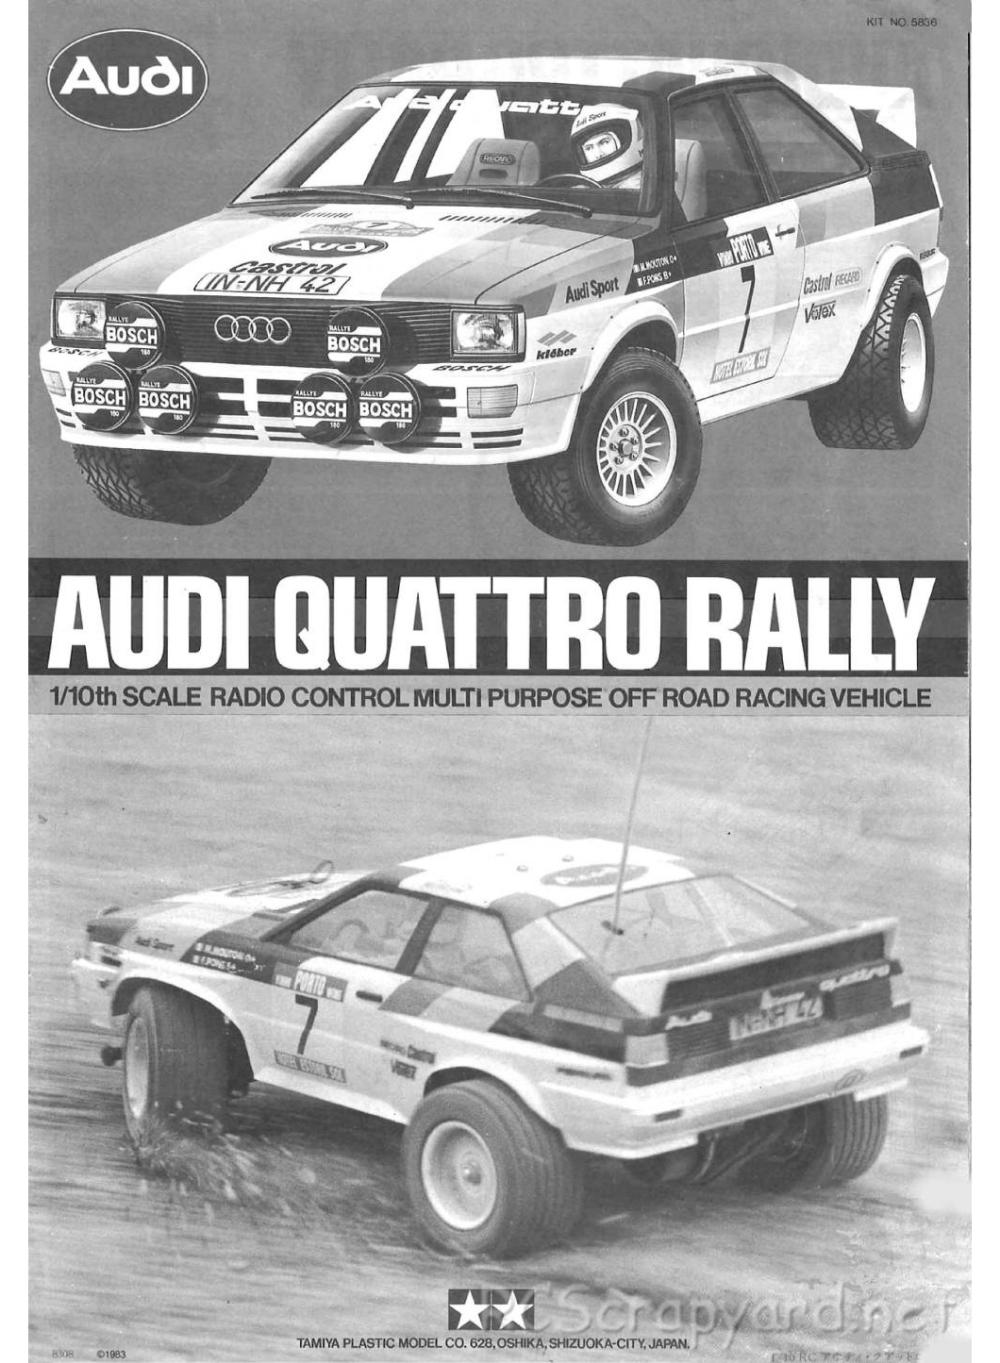 Tamiya - Audi Quattro Rally - 58036 - Manual